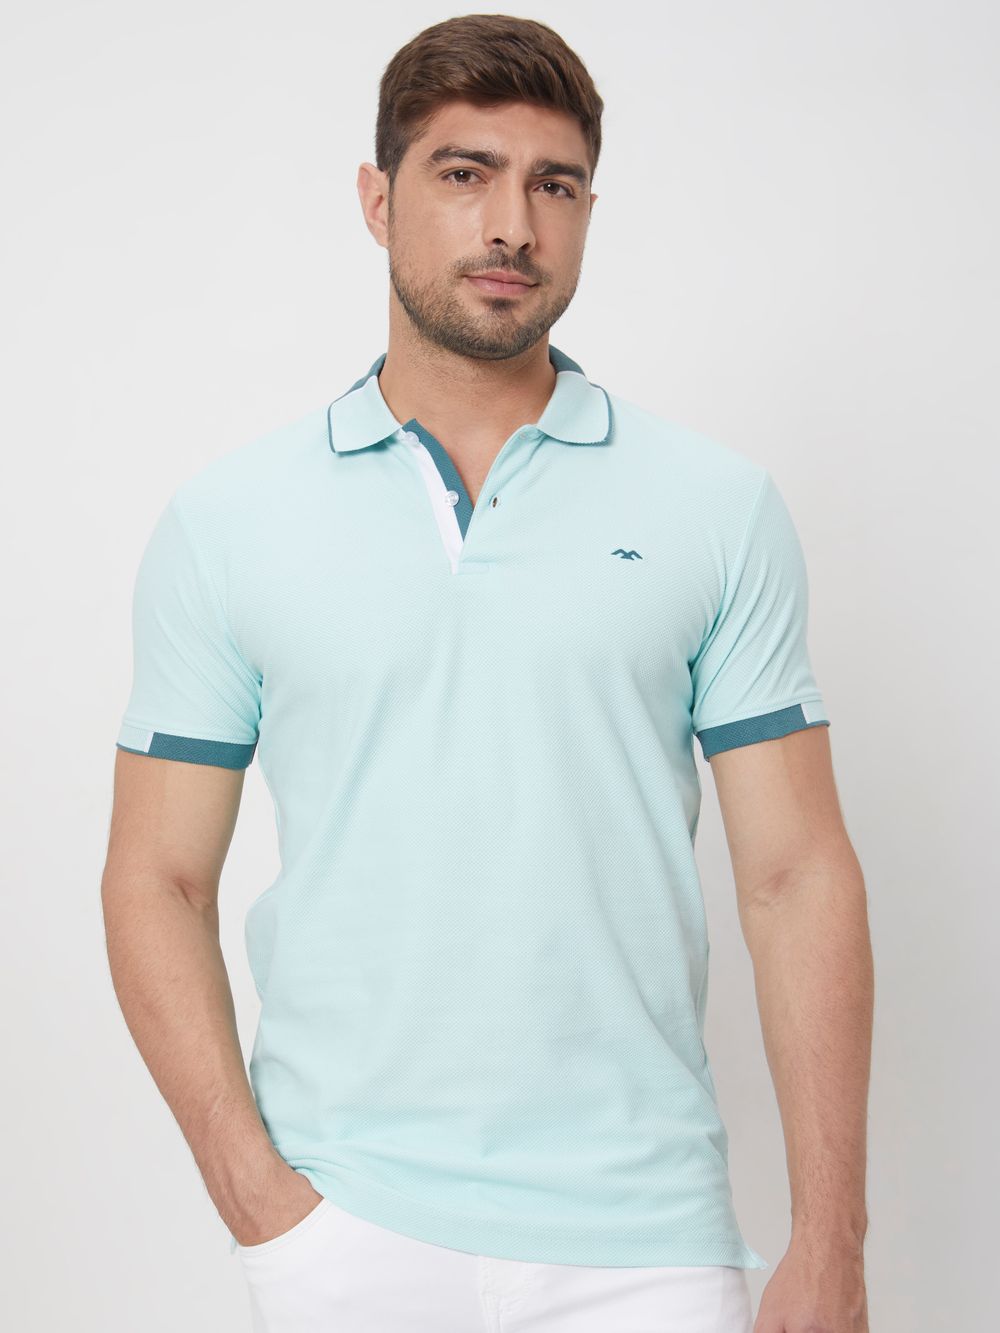 Turquoise Detail Plain Slim Fit Mini Popcornt-Shirt